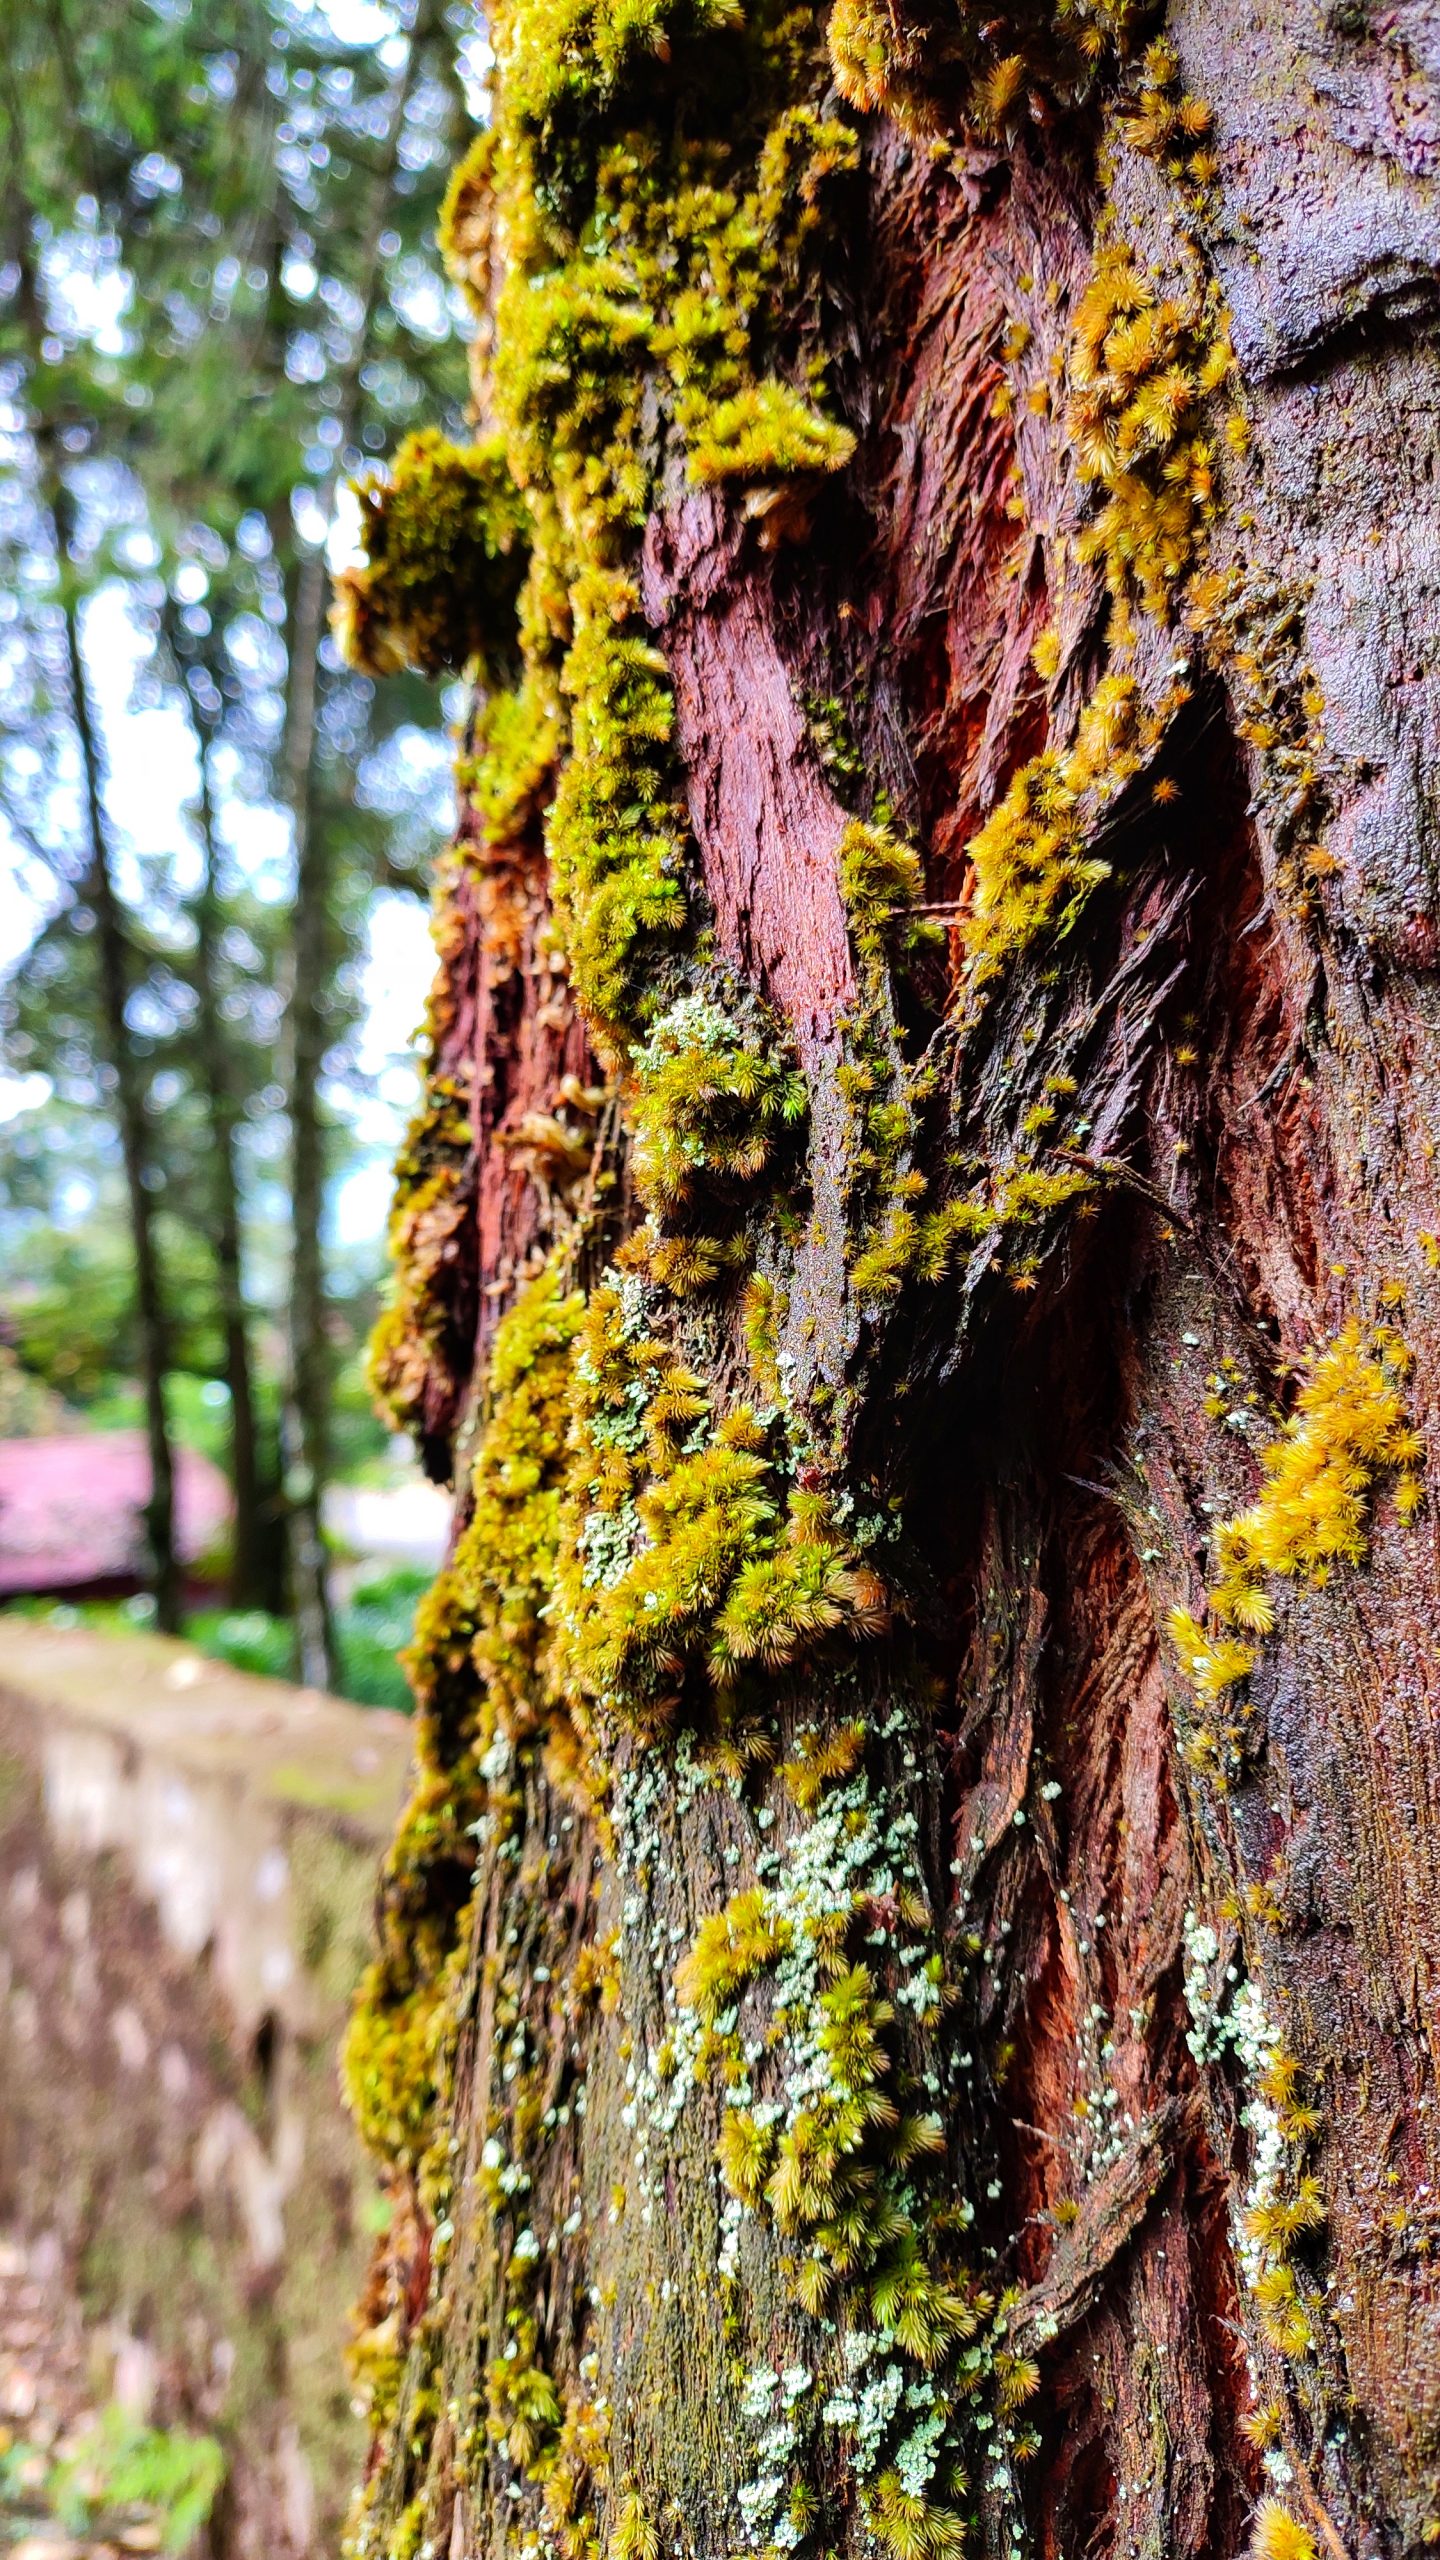 Moss on a tree bark